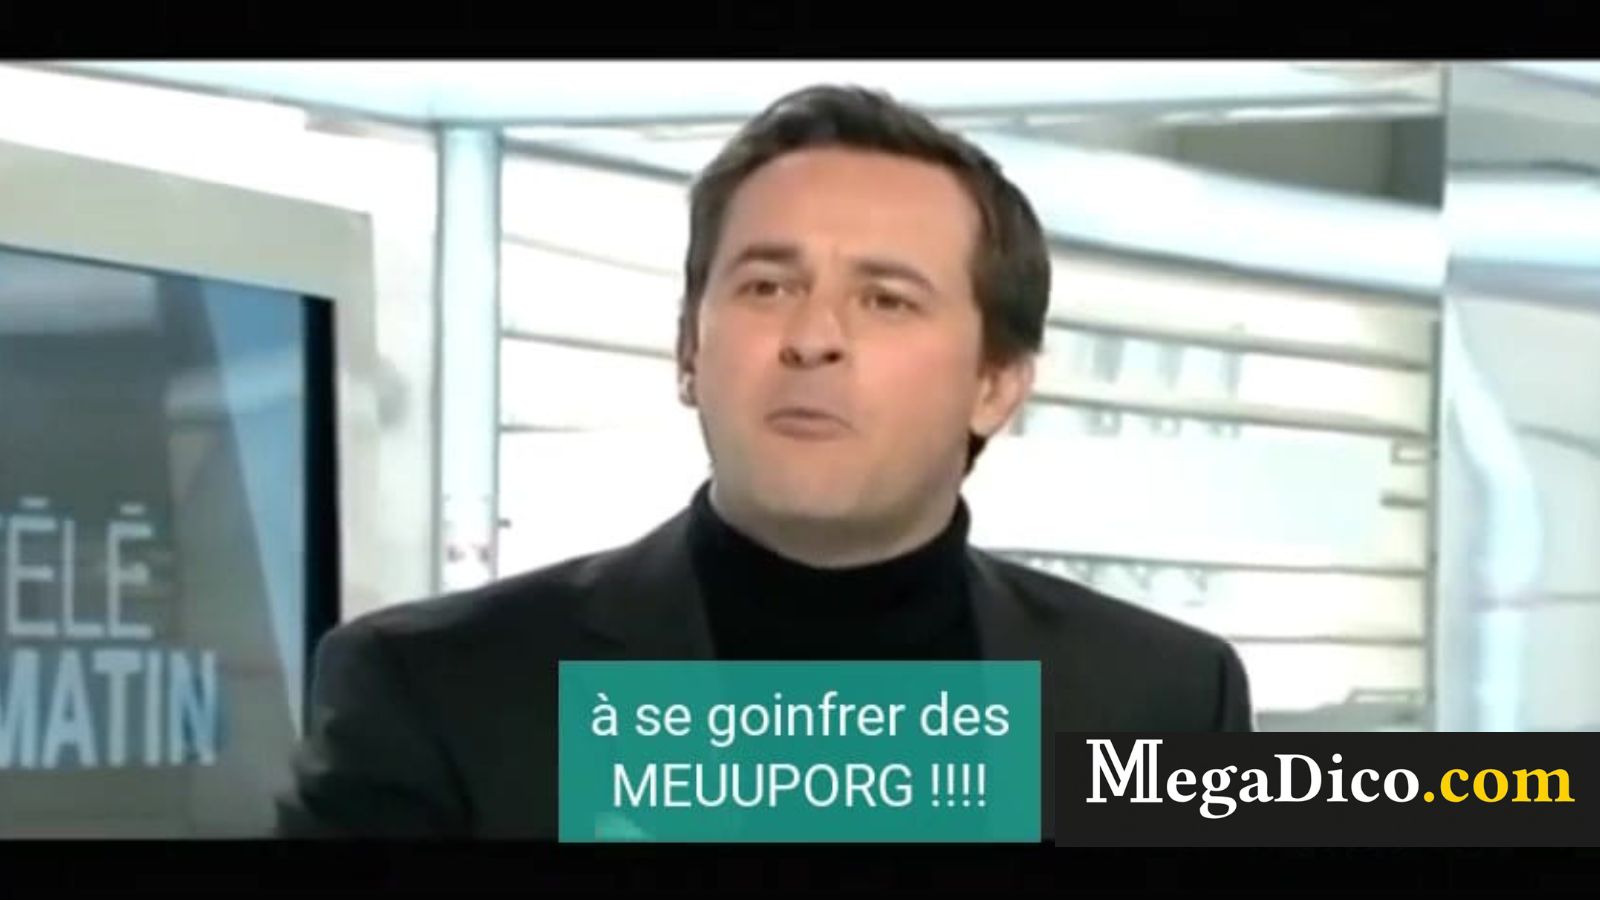 télé matin explication du sigle MMORPG par un journaliste - Définition MegaDico